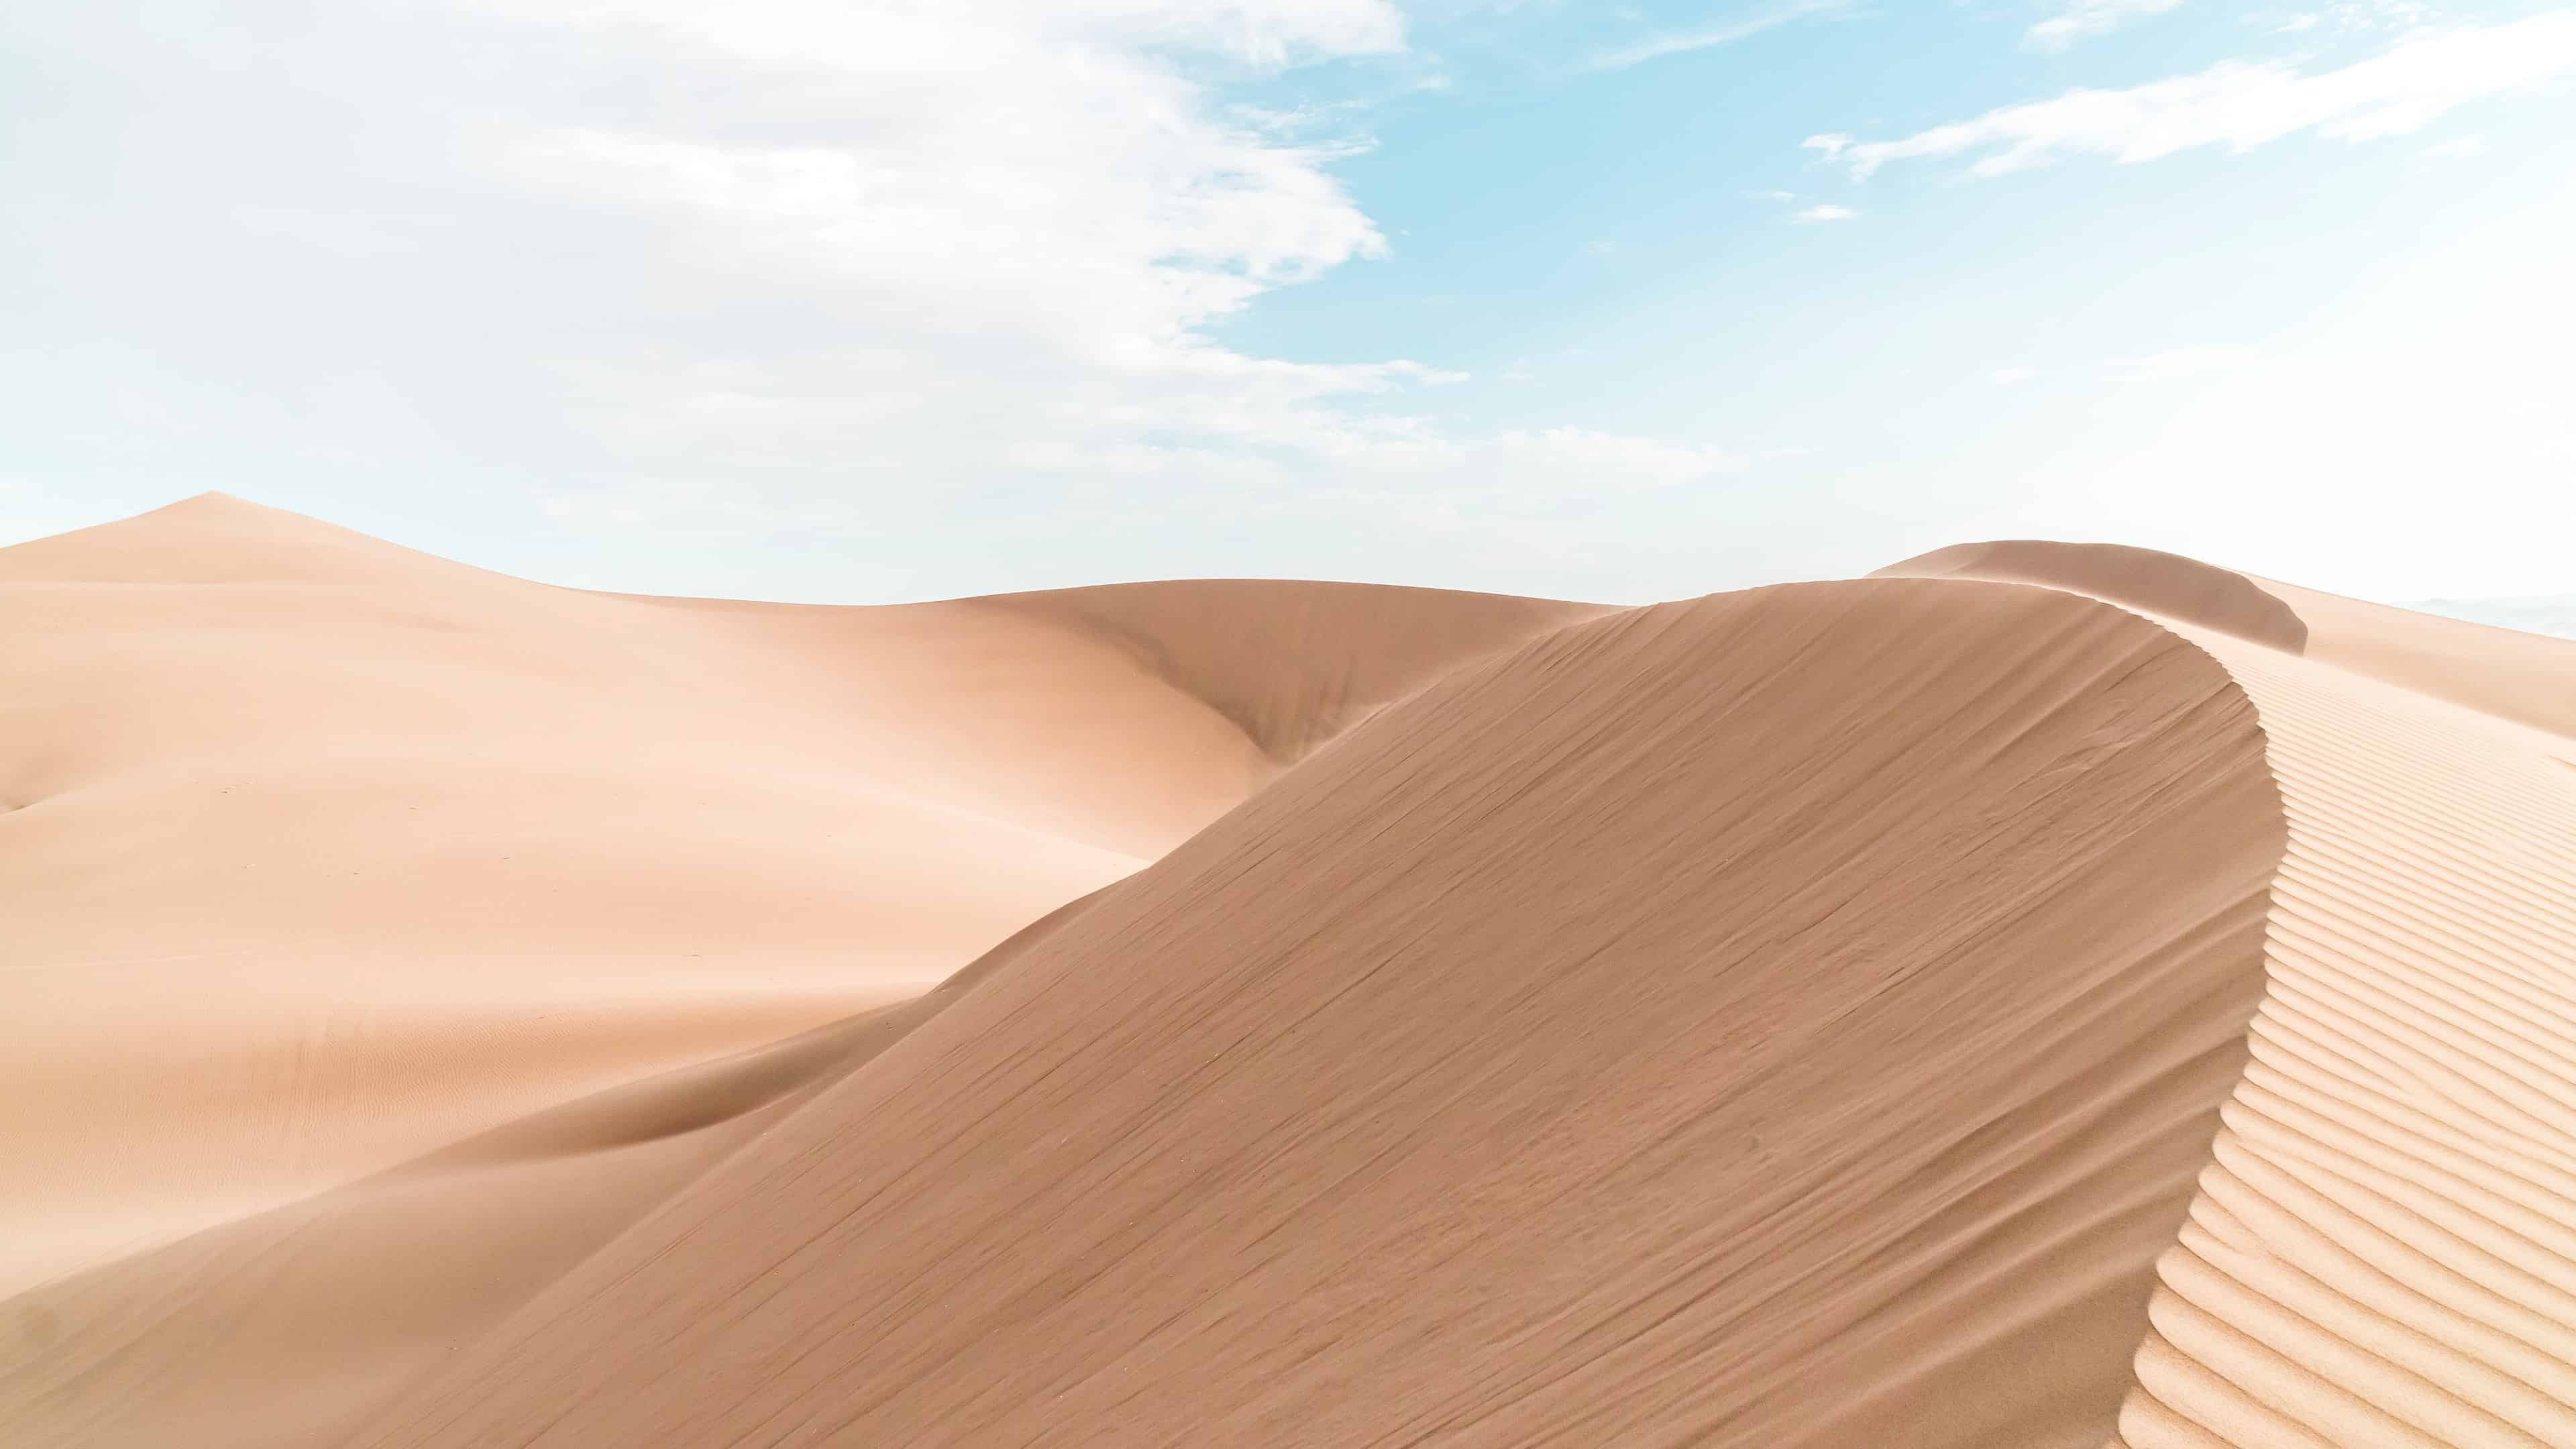 Sand Dunes Huacachina Peru UHD 4K Wallpaper | Pixelz